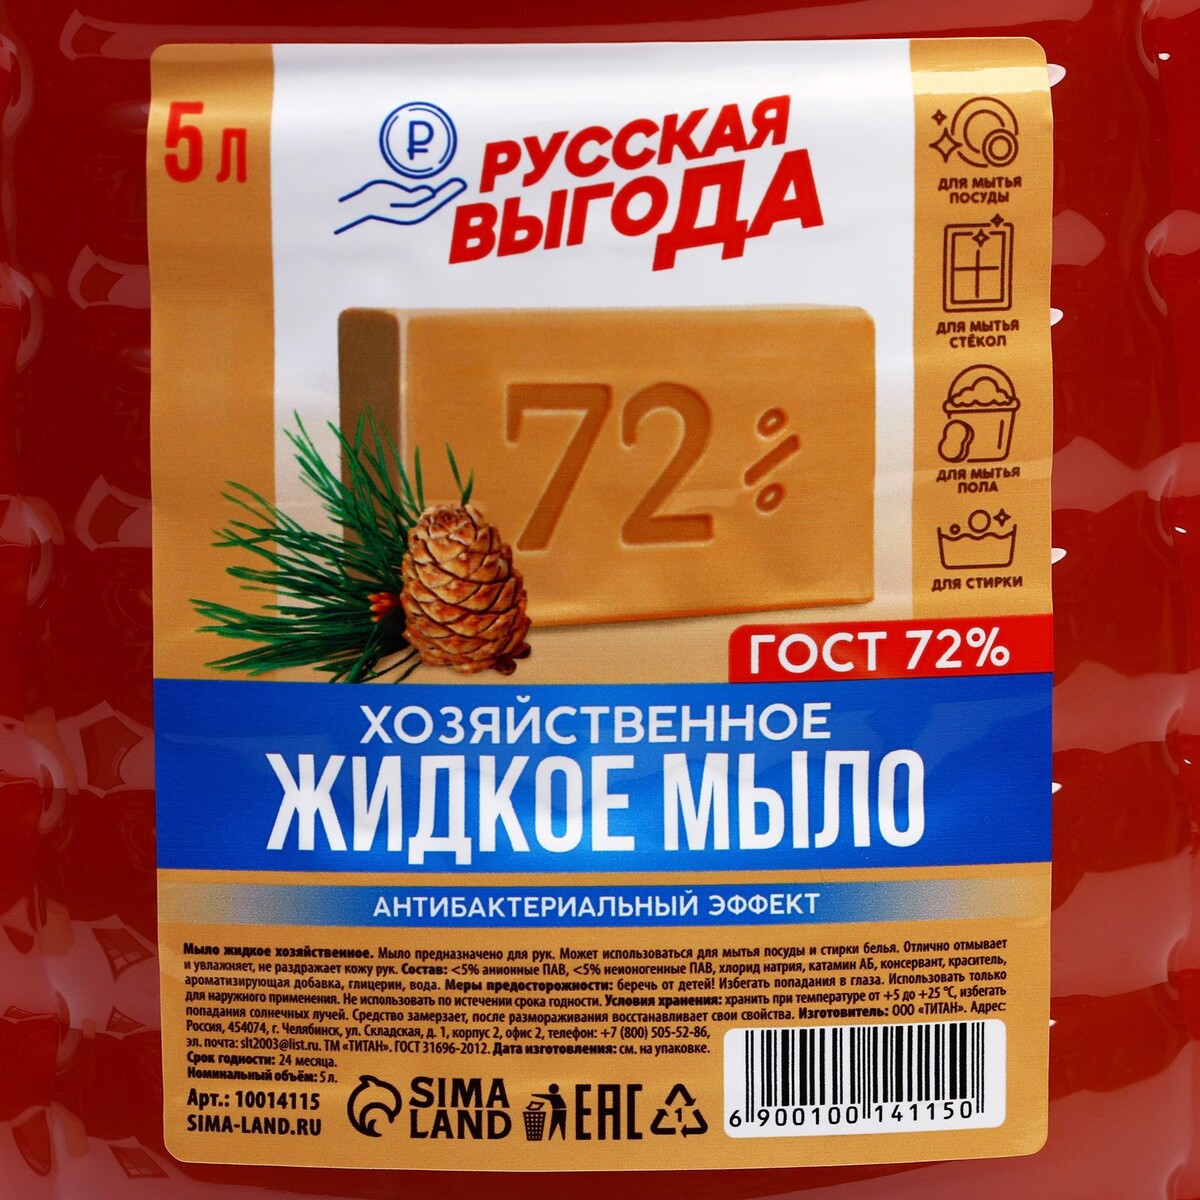 Мыло хозяйственное, жидкое, 72% русская выгода, No brand 06916952 - фото 4